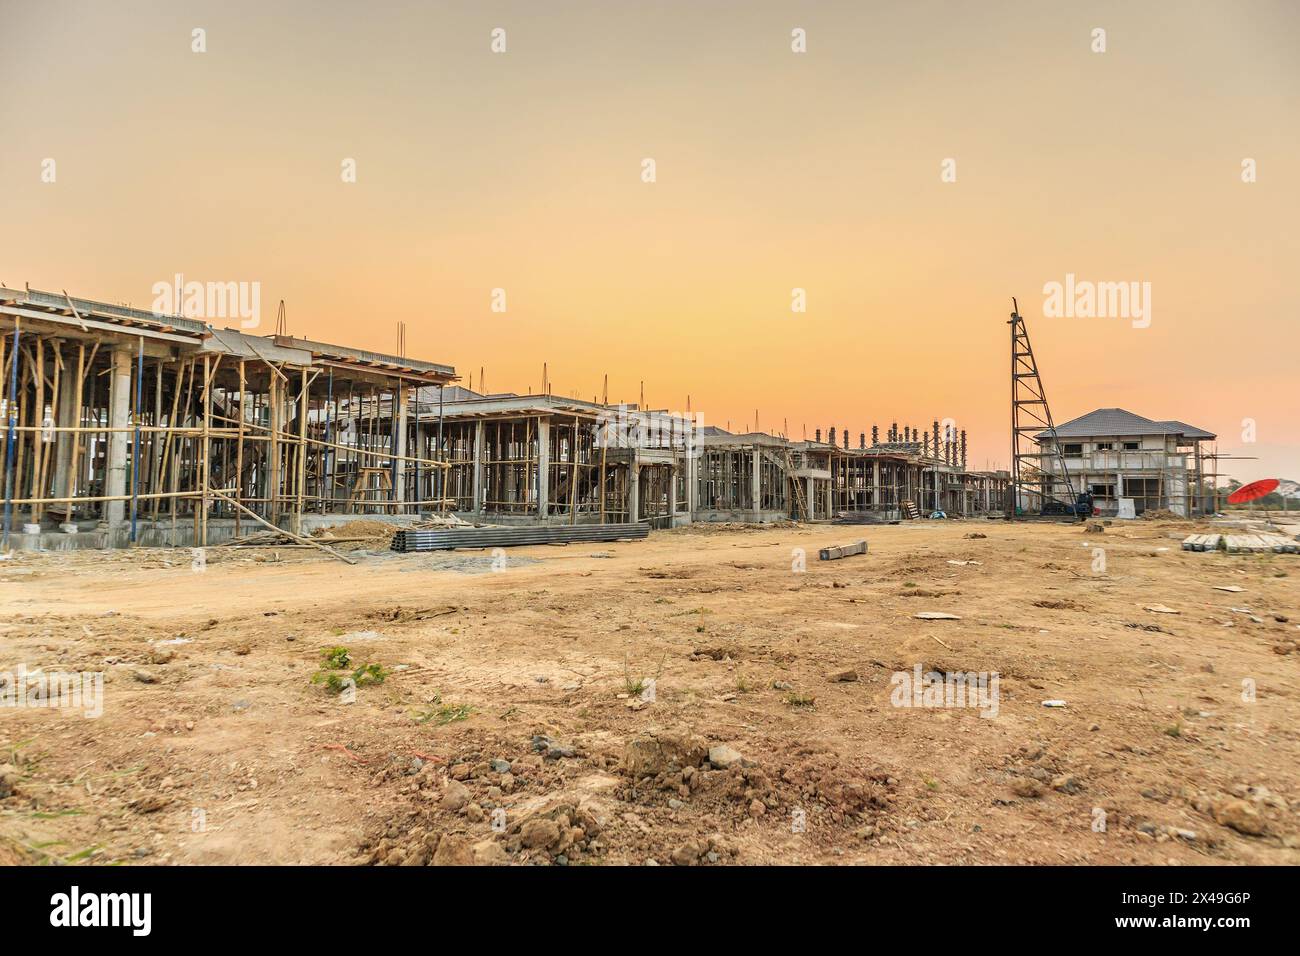 installazione di cornici in cemento per la costruzione di nuove case in cantiere, sviluppo immobiliare Foto Stock